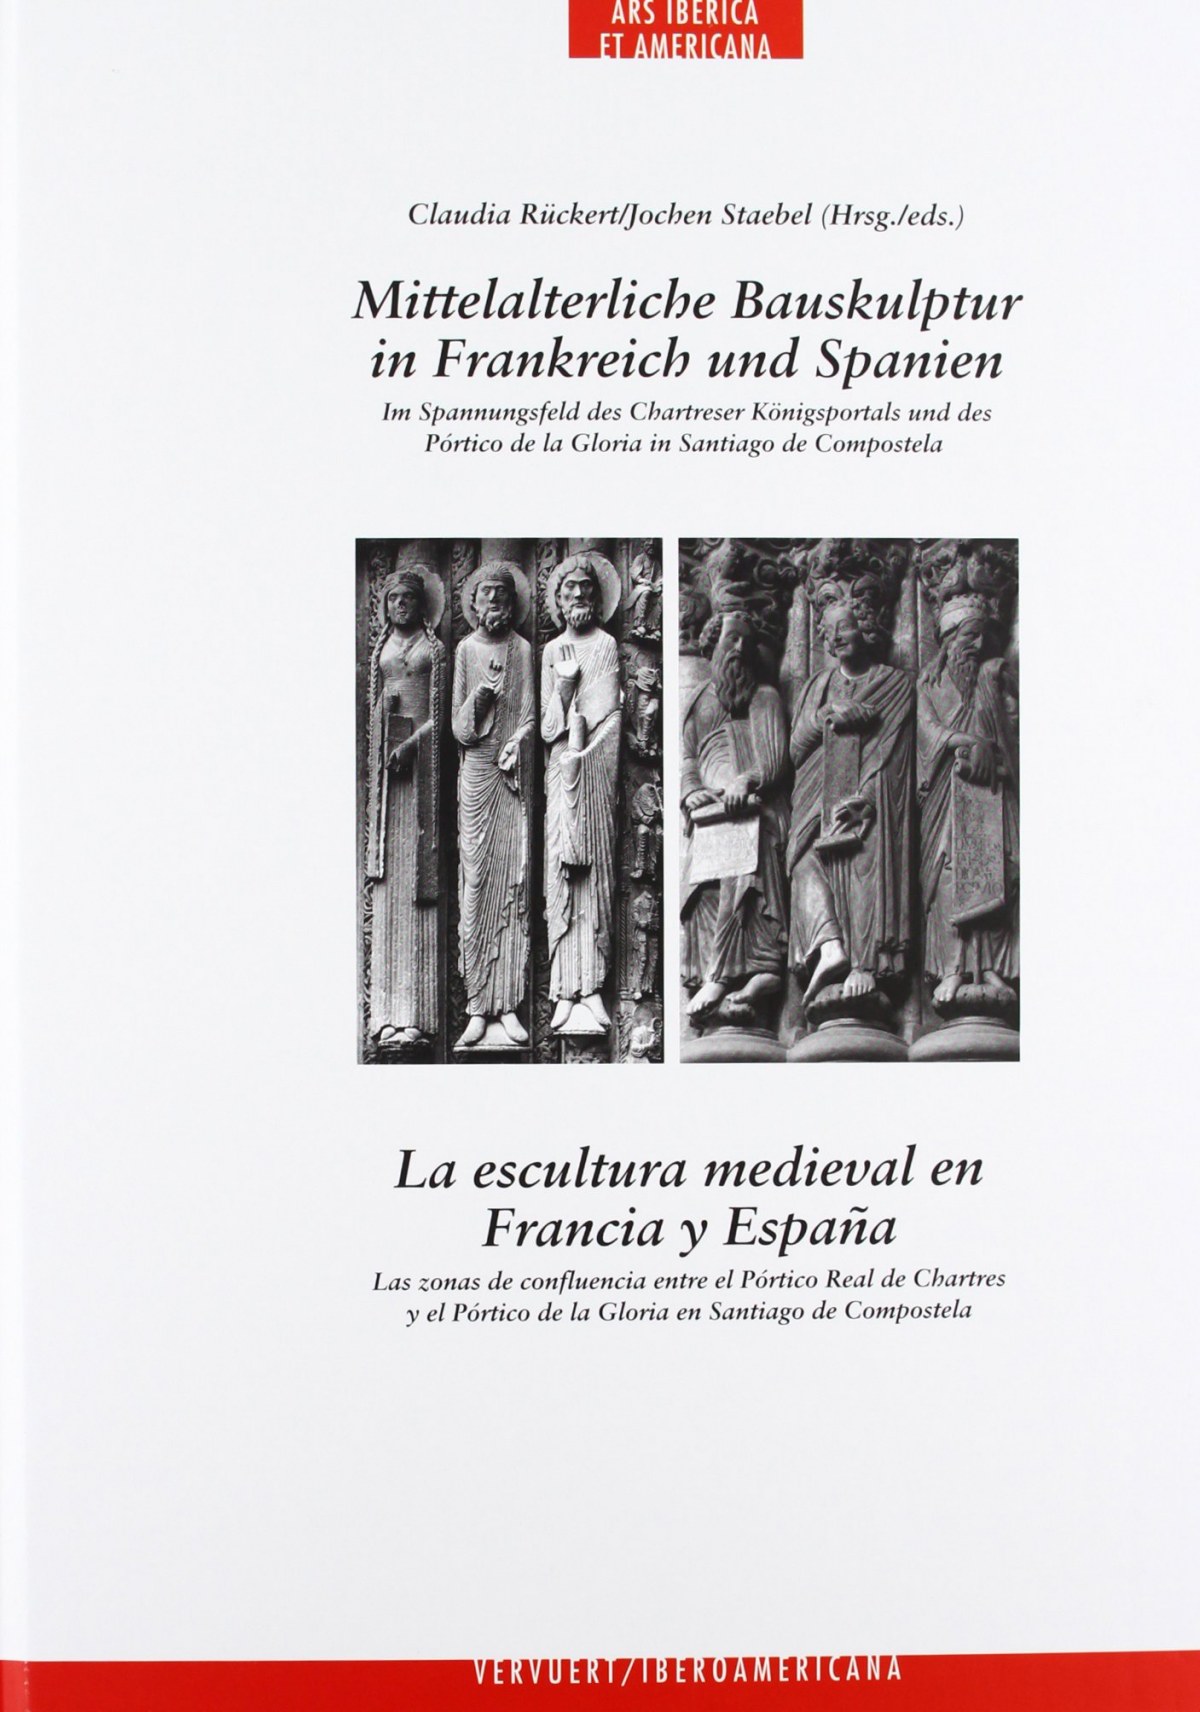 Escultura medieval en francia y españa - Ruckert, Claudia